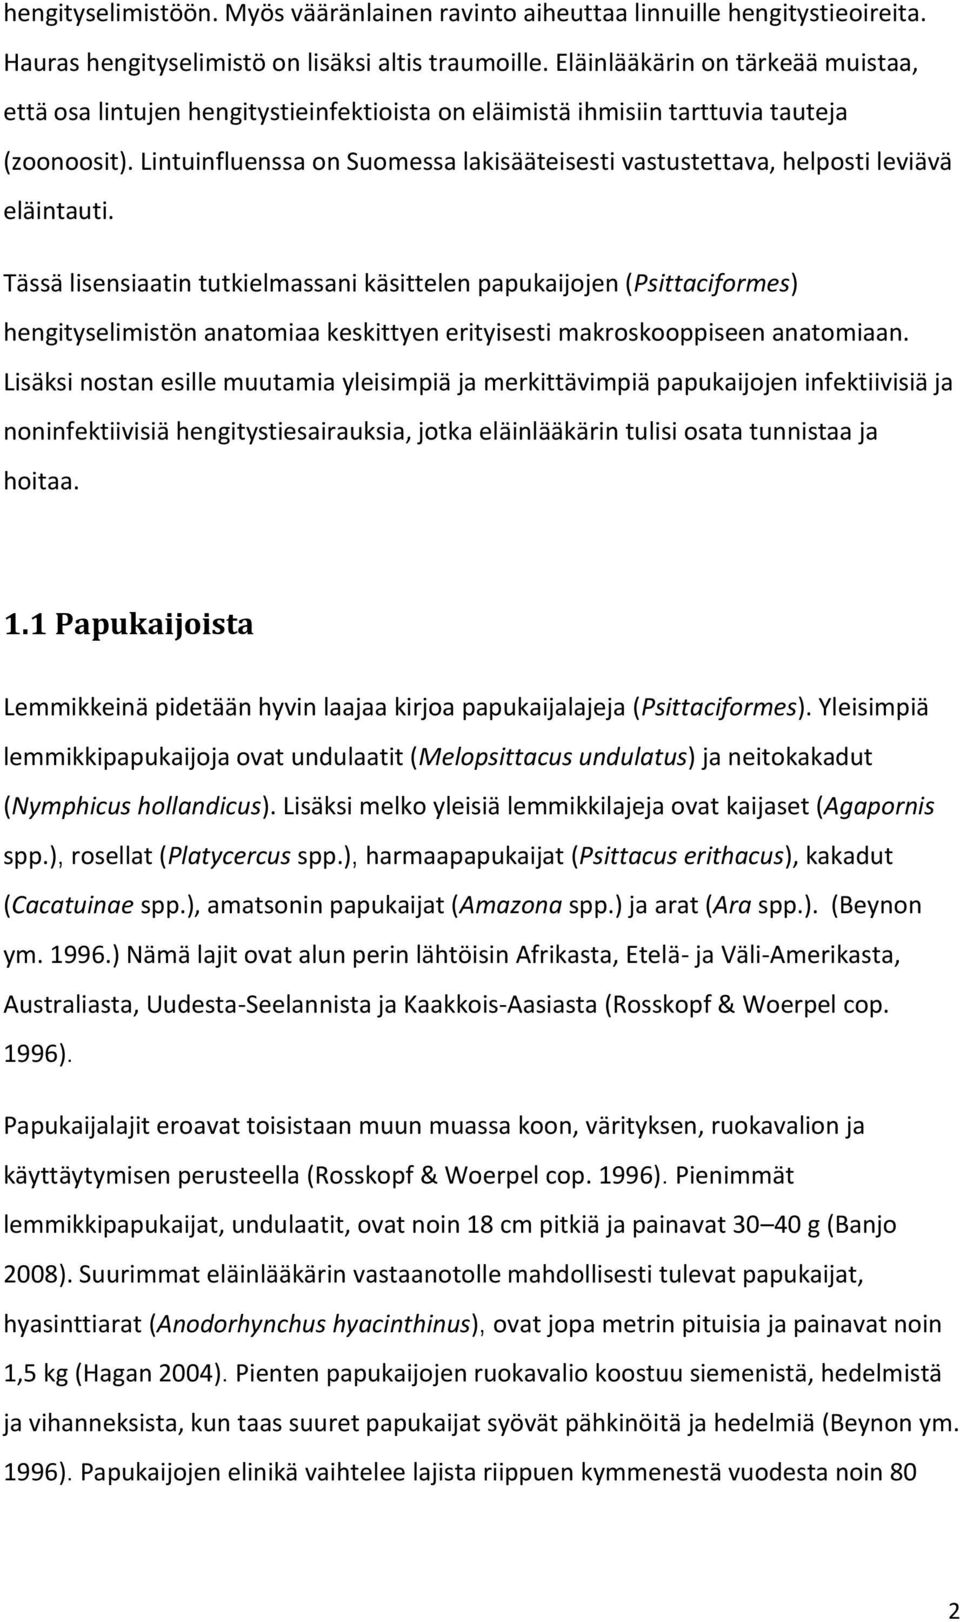 Lintuinfluenssa on Suomessa lakisääteisesti vastustettava, helposti leviävä eläintauti.